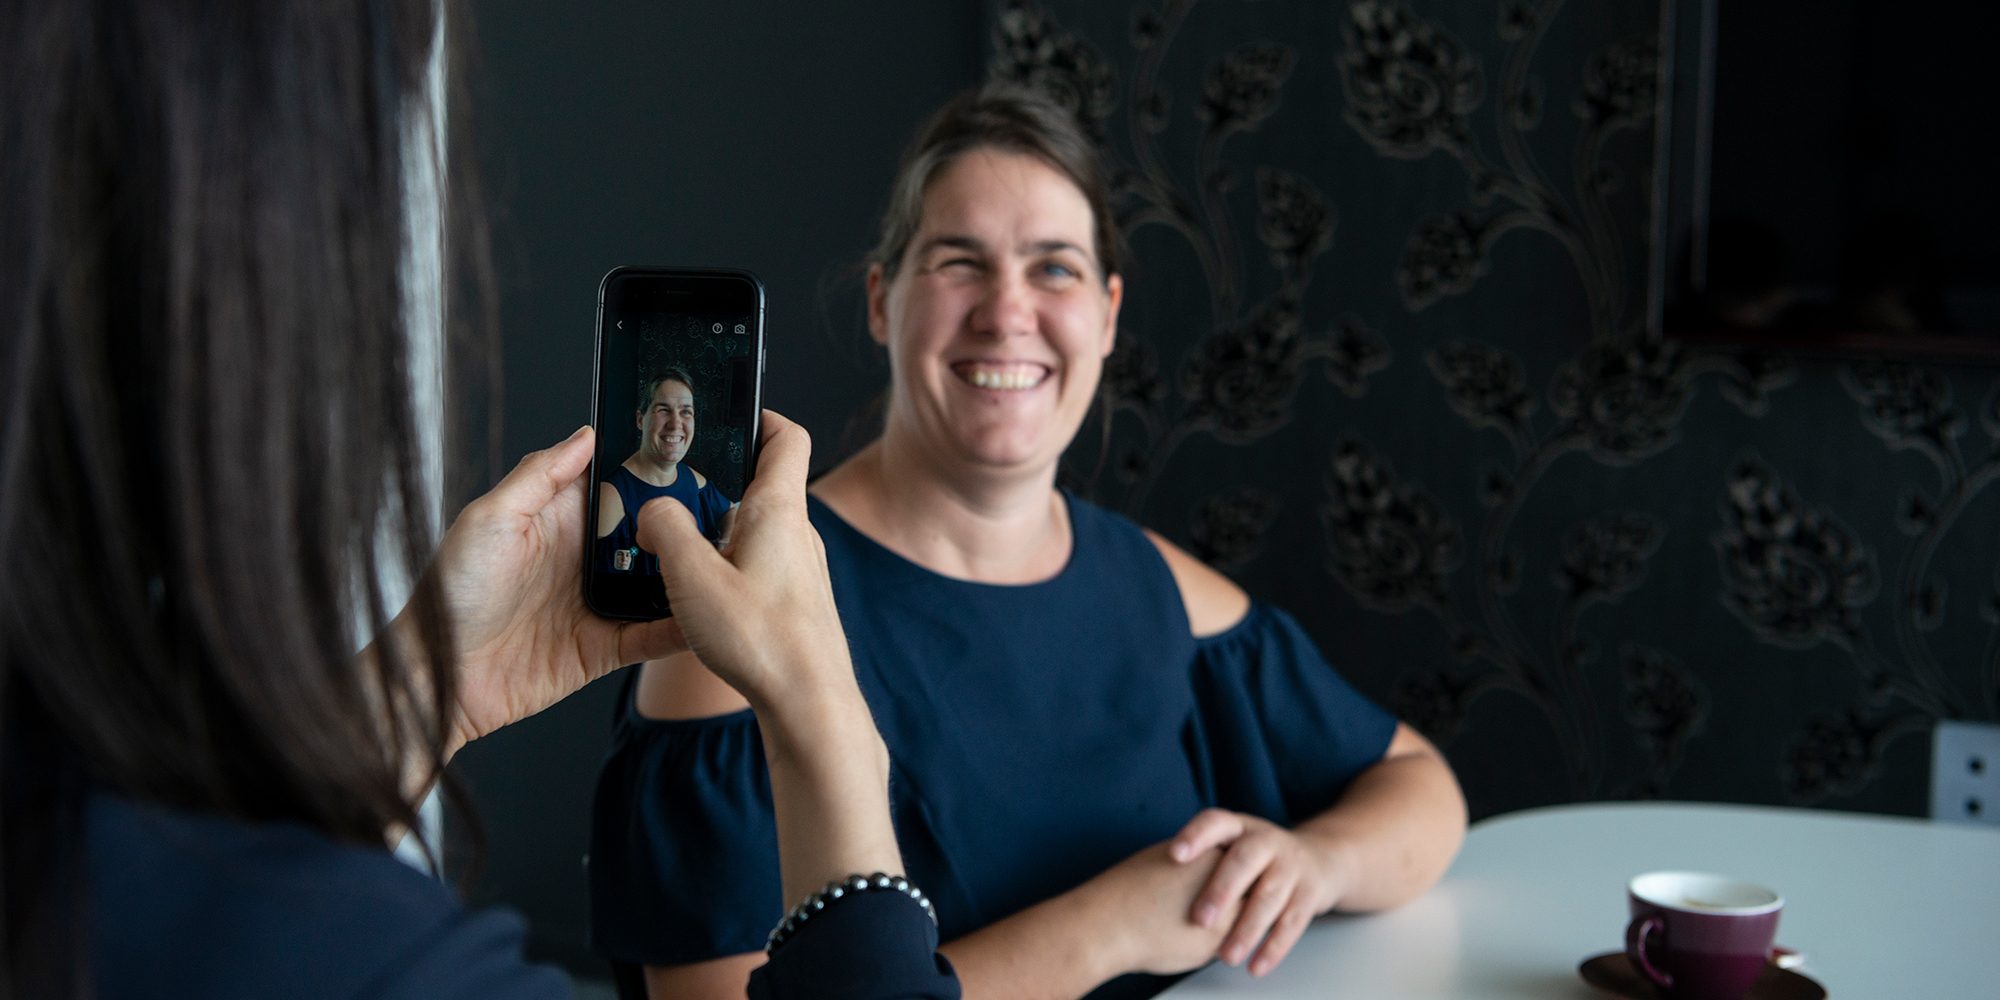 Katrien neemt een foto met een smartphone van een glimlachende Monique